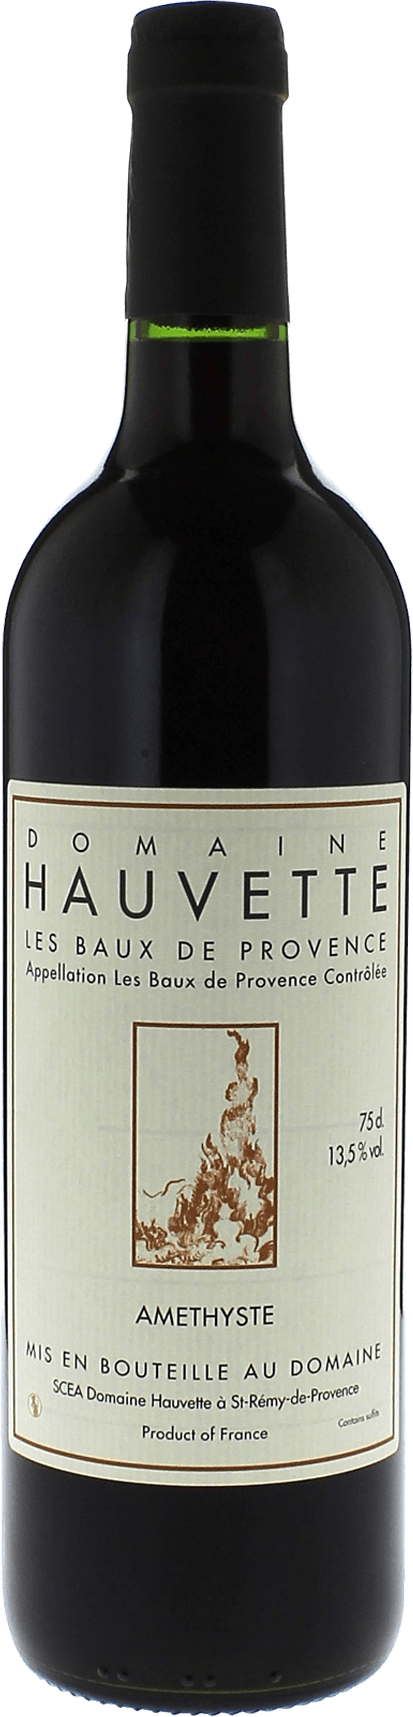 Domaine hauvette amethyste 2018  Baux de Provence AOP, Provence